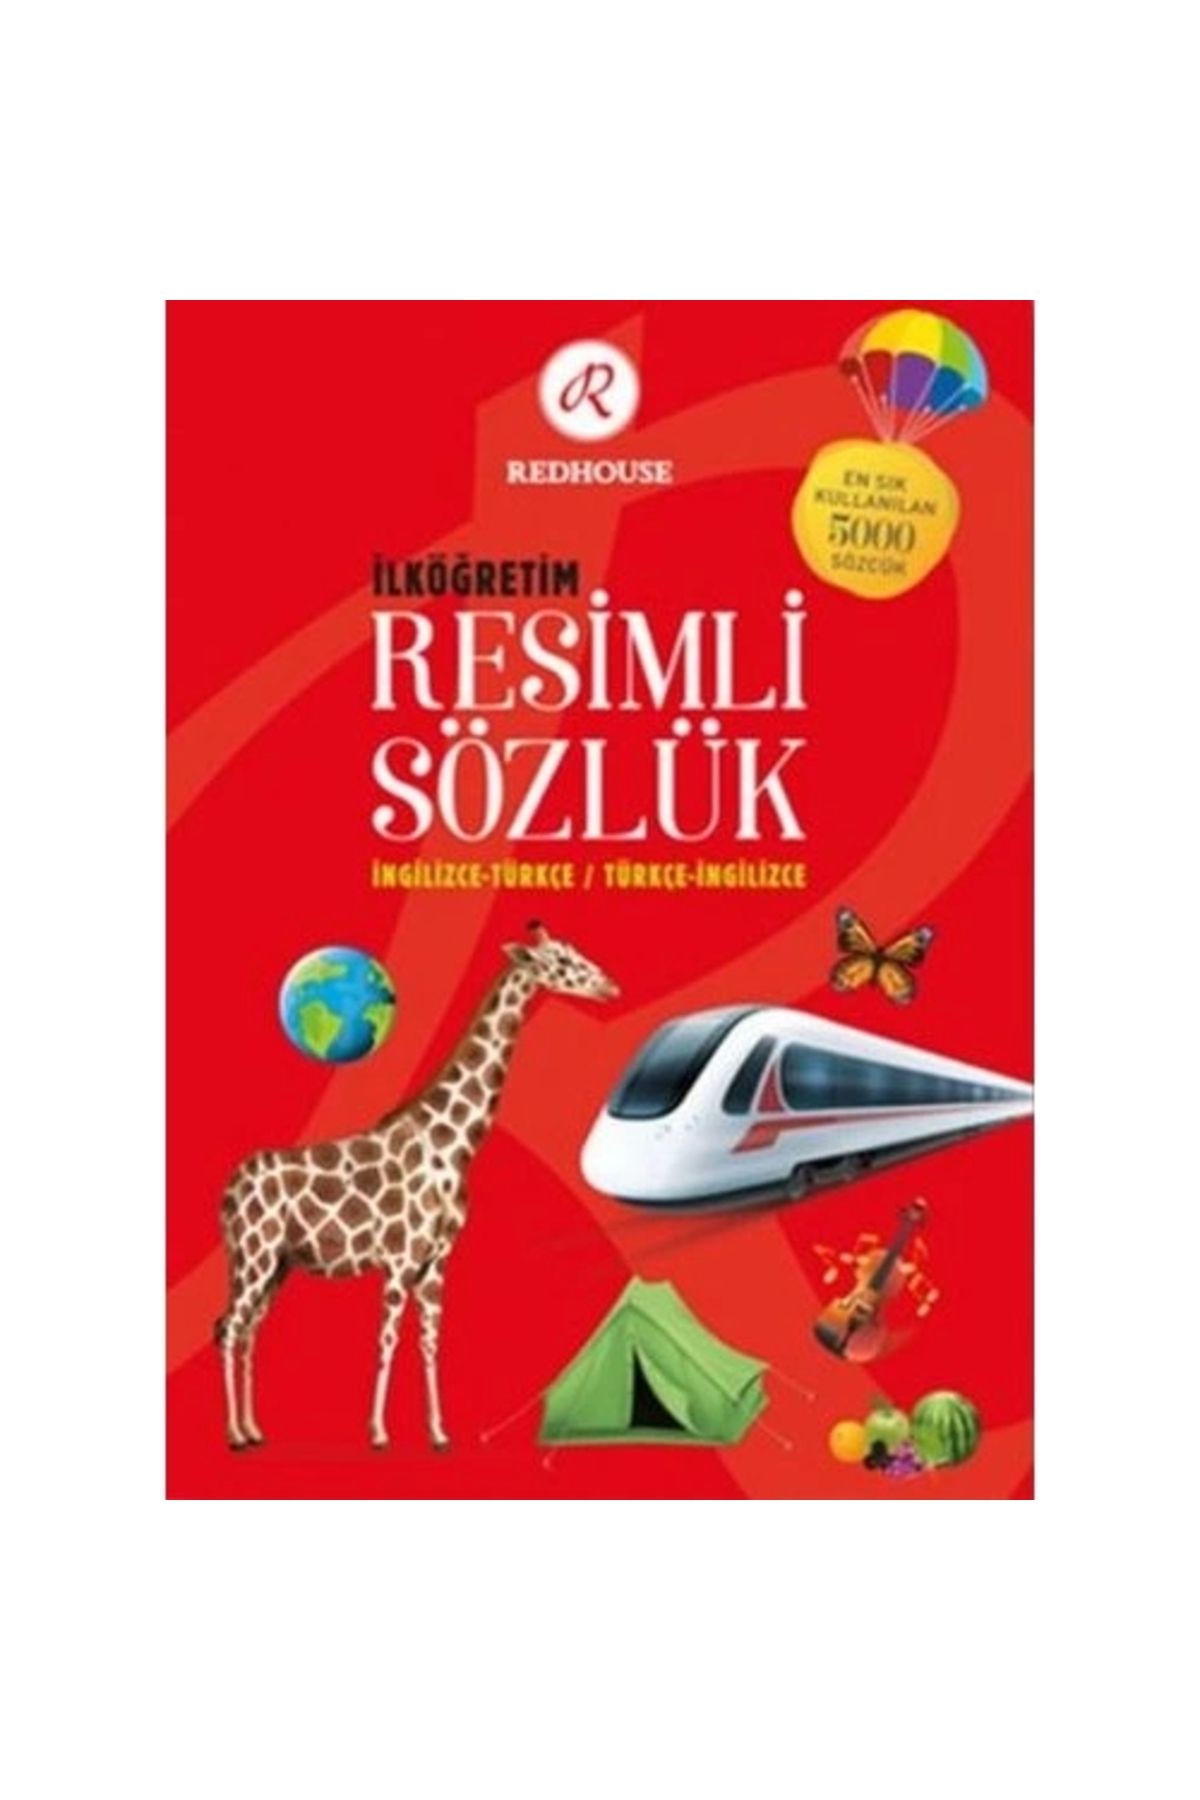 Redhouse Yayınları Redhouse Ilköğretim Resimli Sözlük (İNGİLİZCE-TÜRKÇE / TÜRKÇE-İNGİLİZCE)